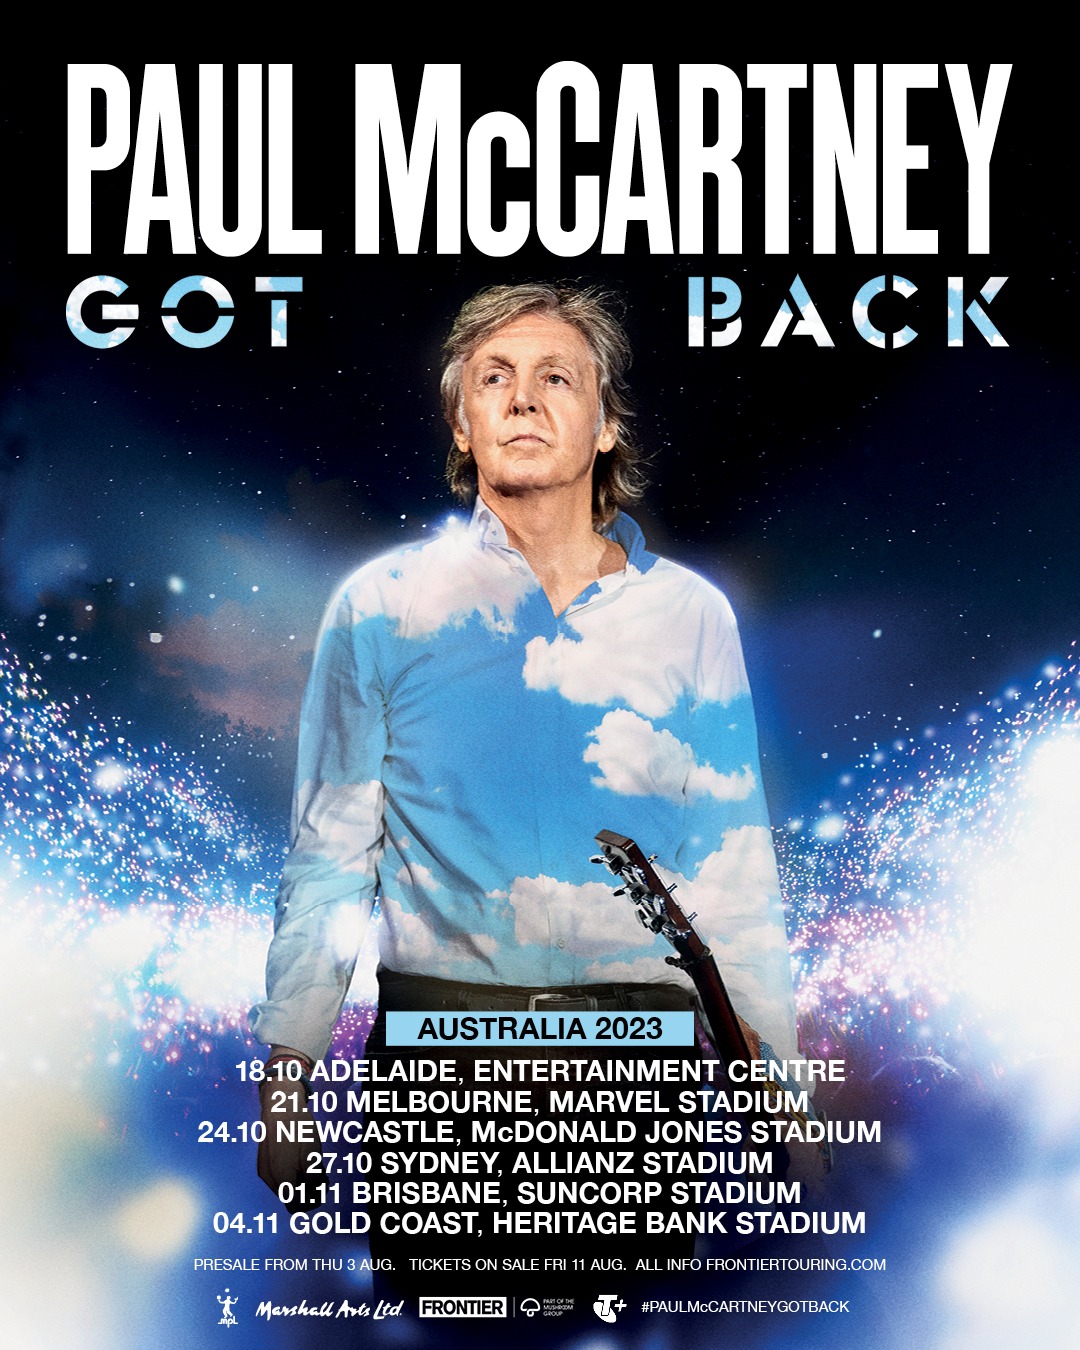 paul mccartney tour 2023 ticket prices australia